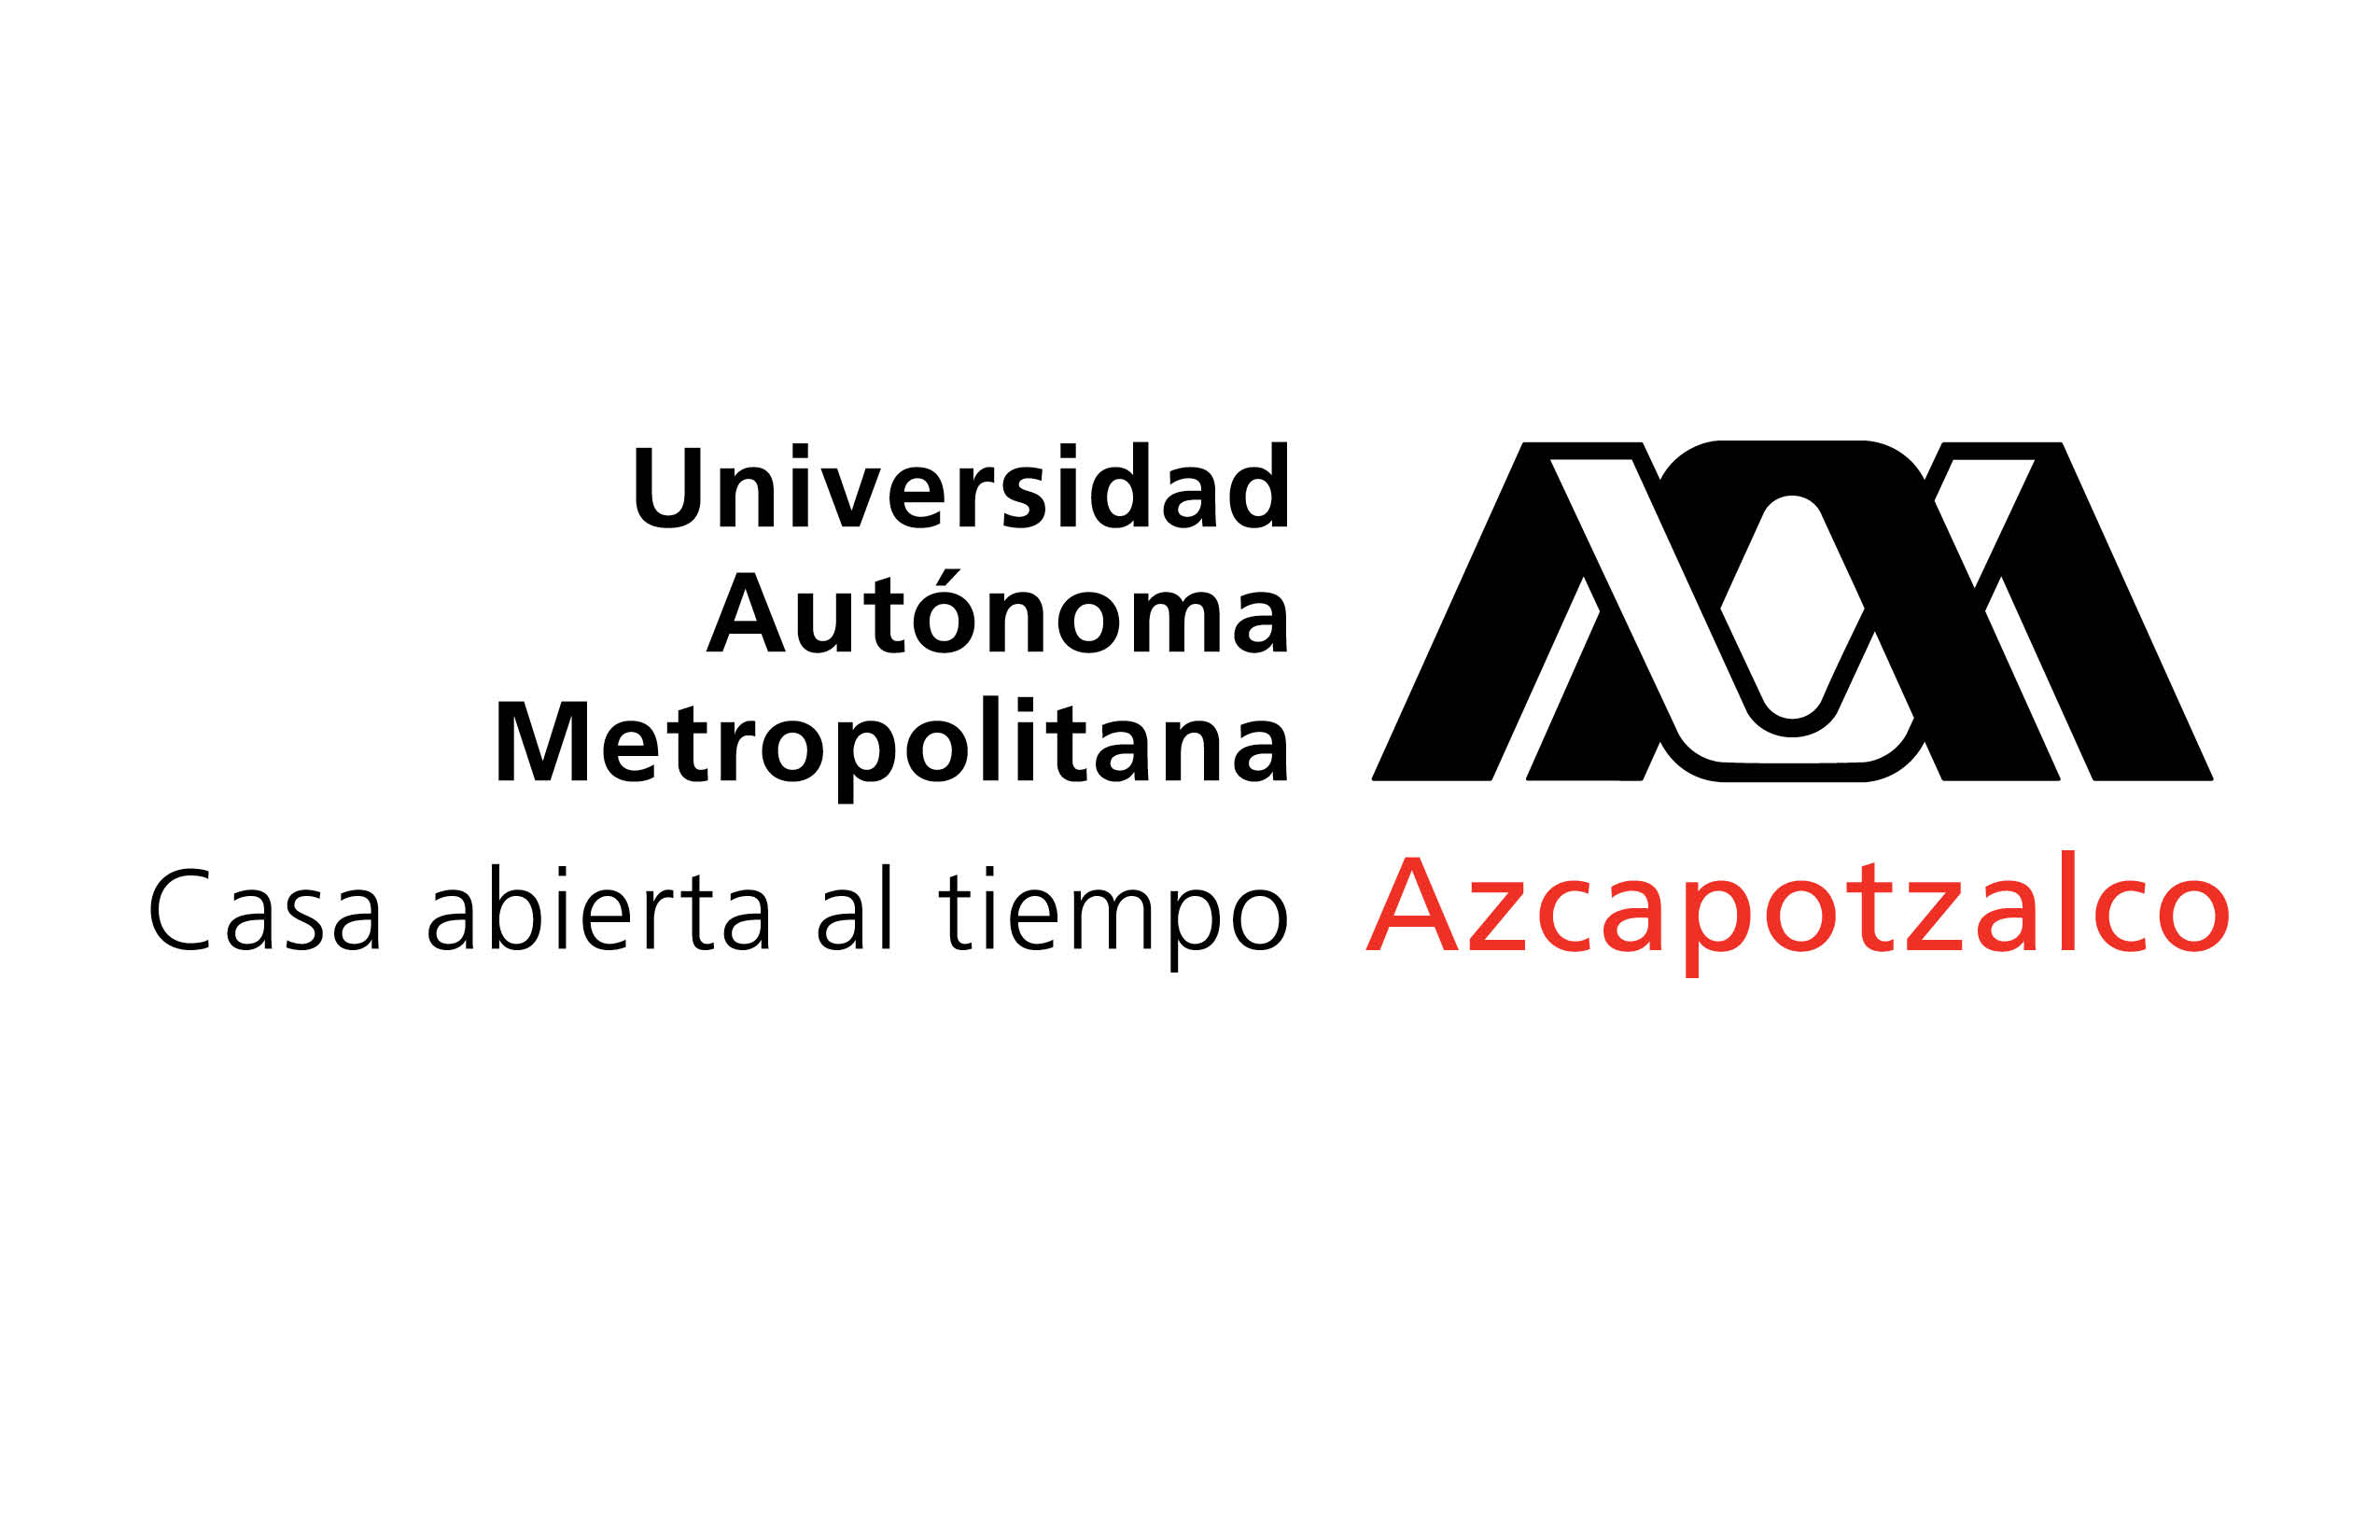 UAM Azcapotzalco Logo photo - 1